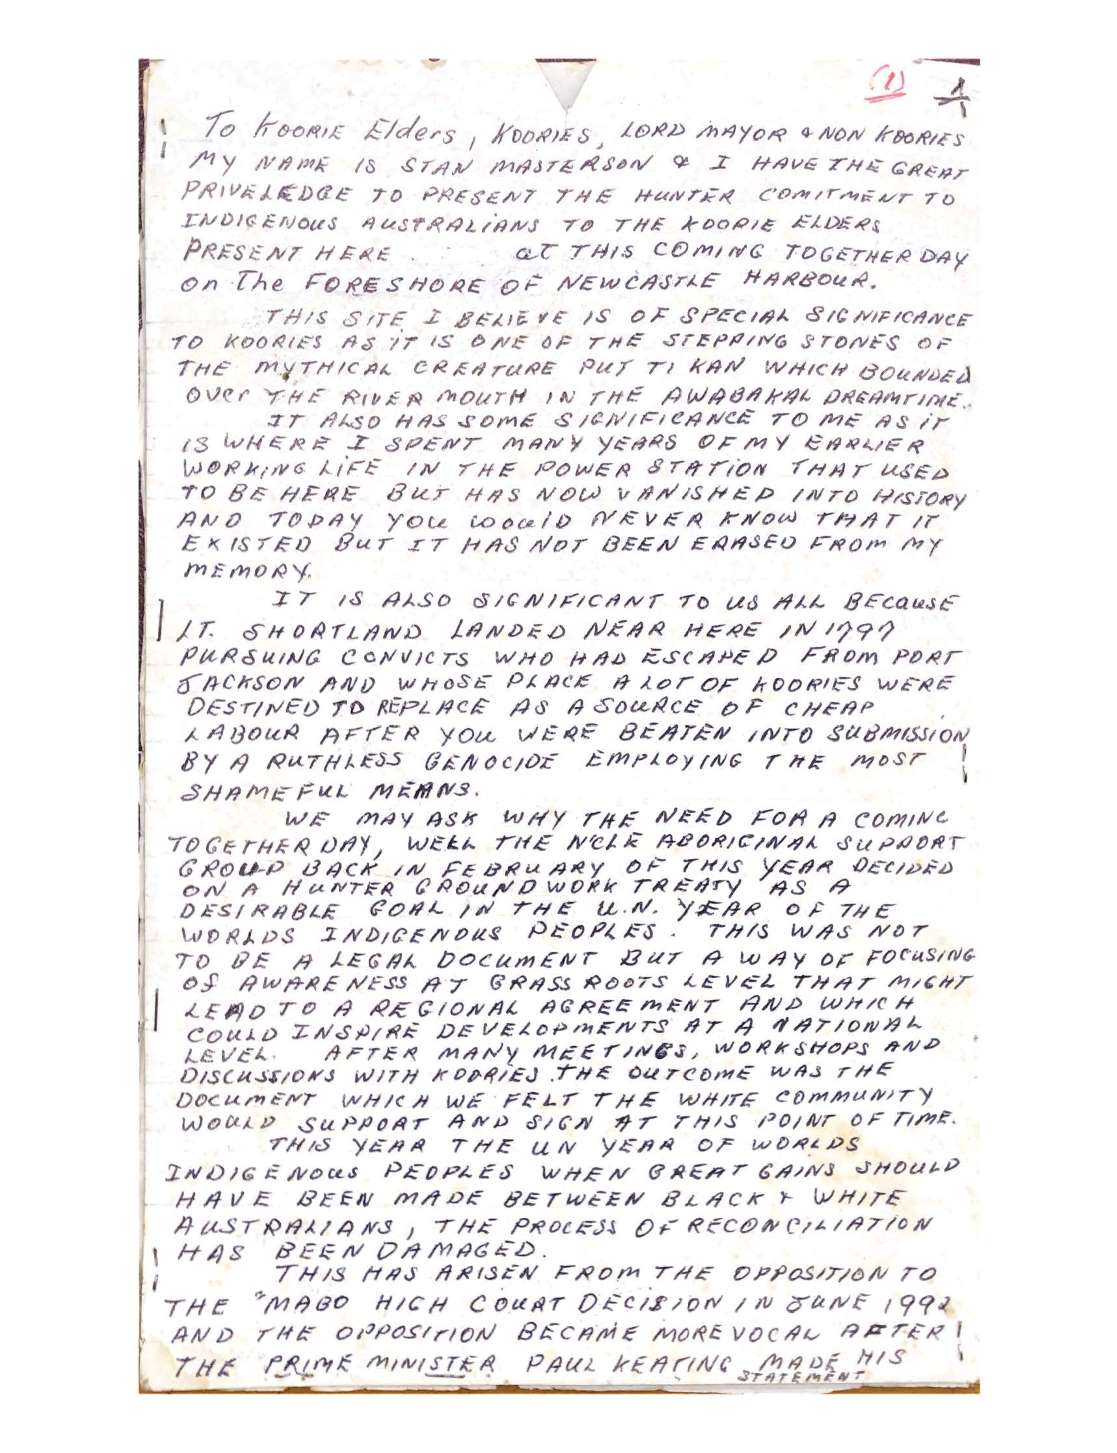  2 page handwritten text (speech) written in capital letters